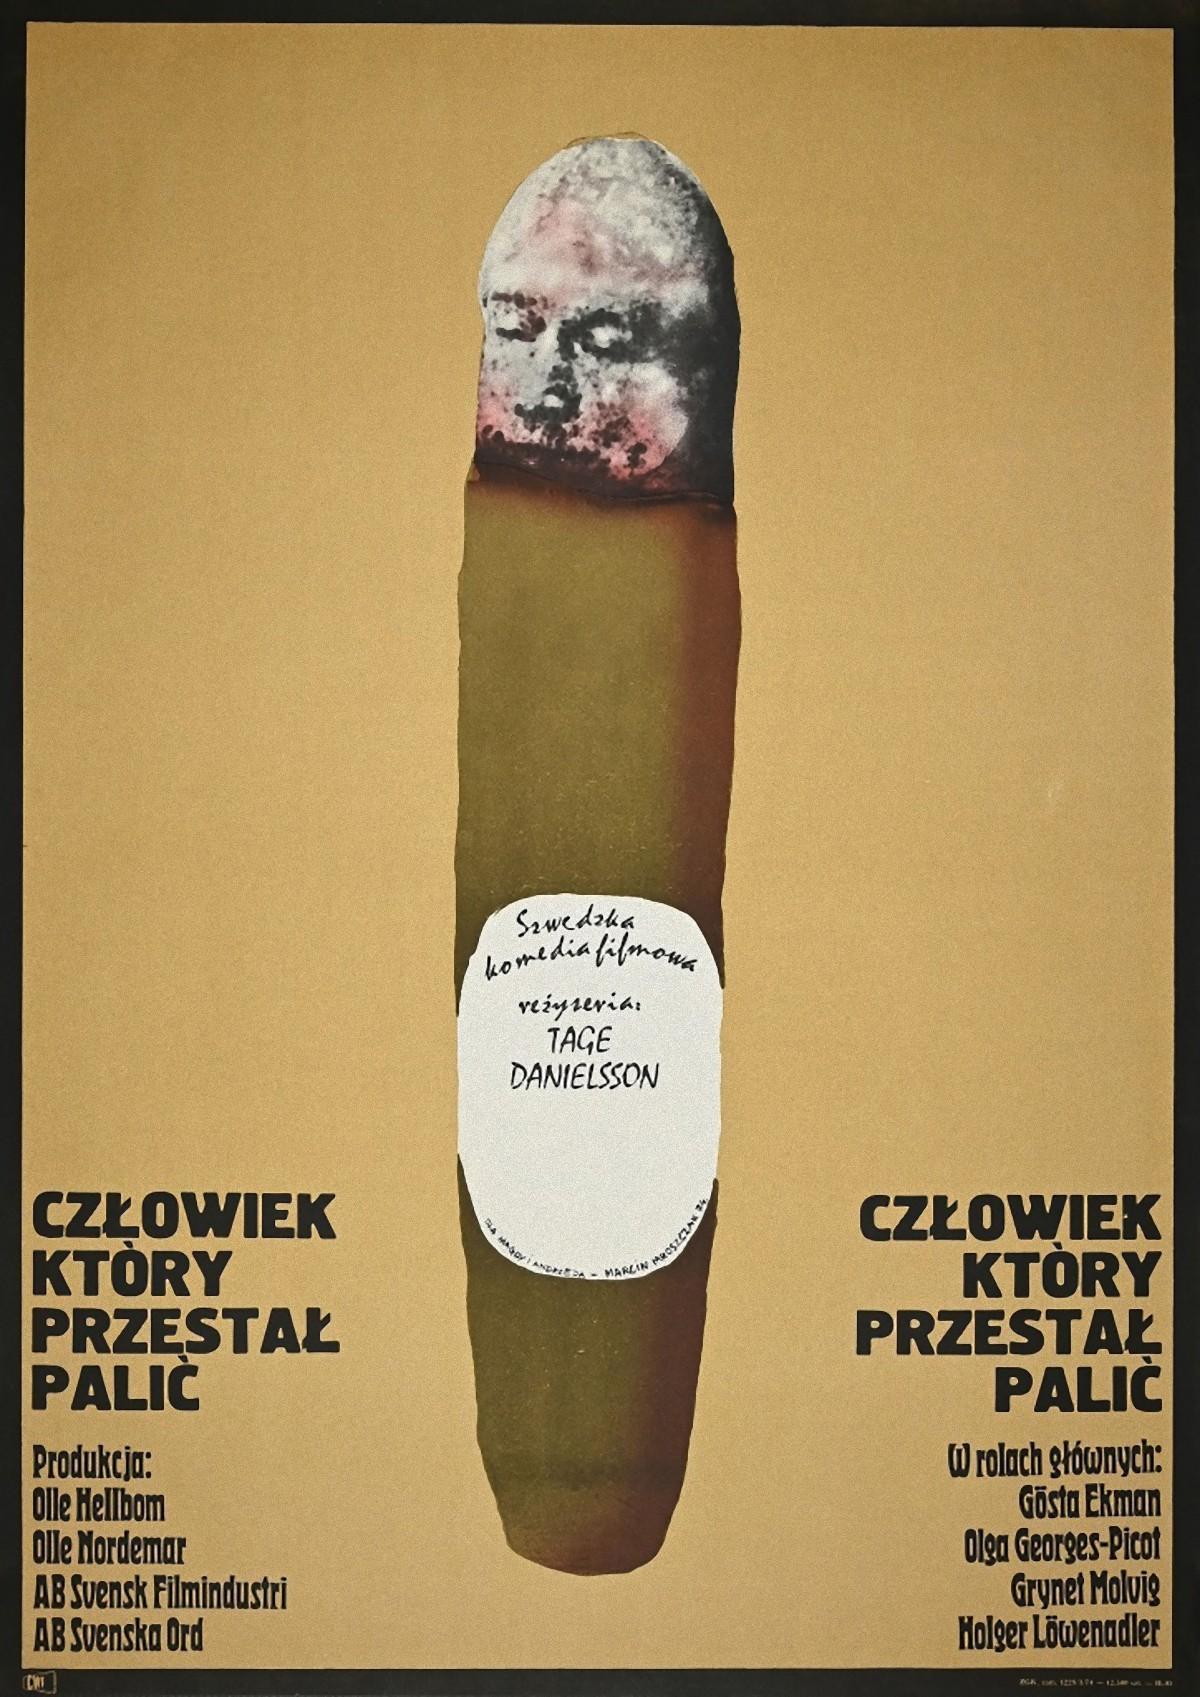 Tage Danielsson - Vintage Poster by Marcin Jan Mroszczak - 1974